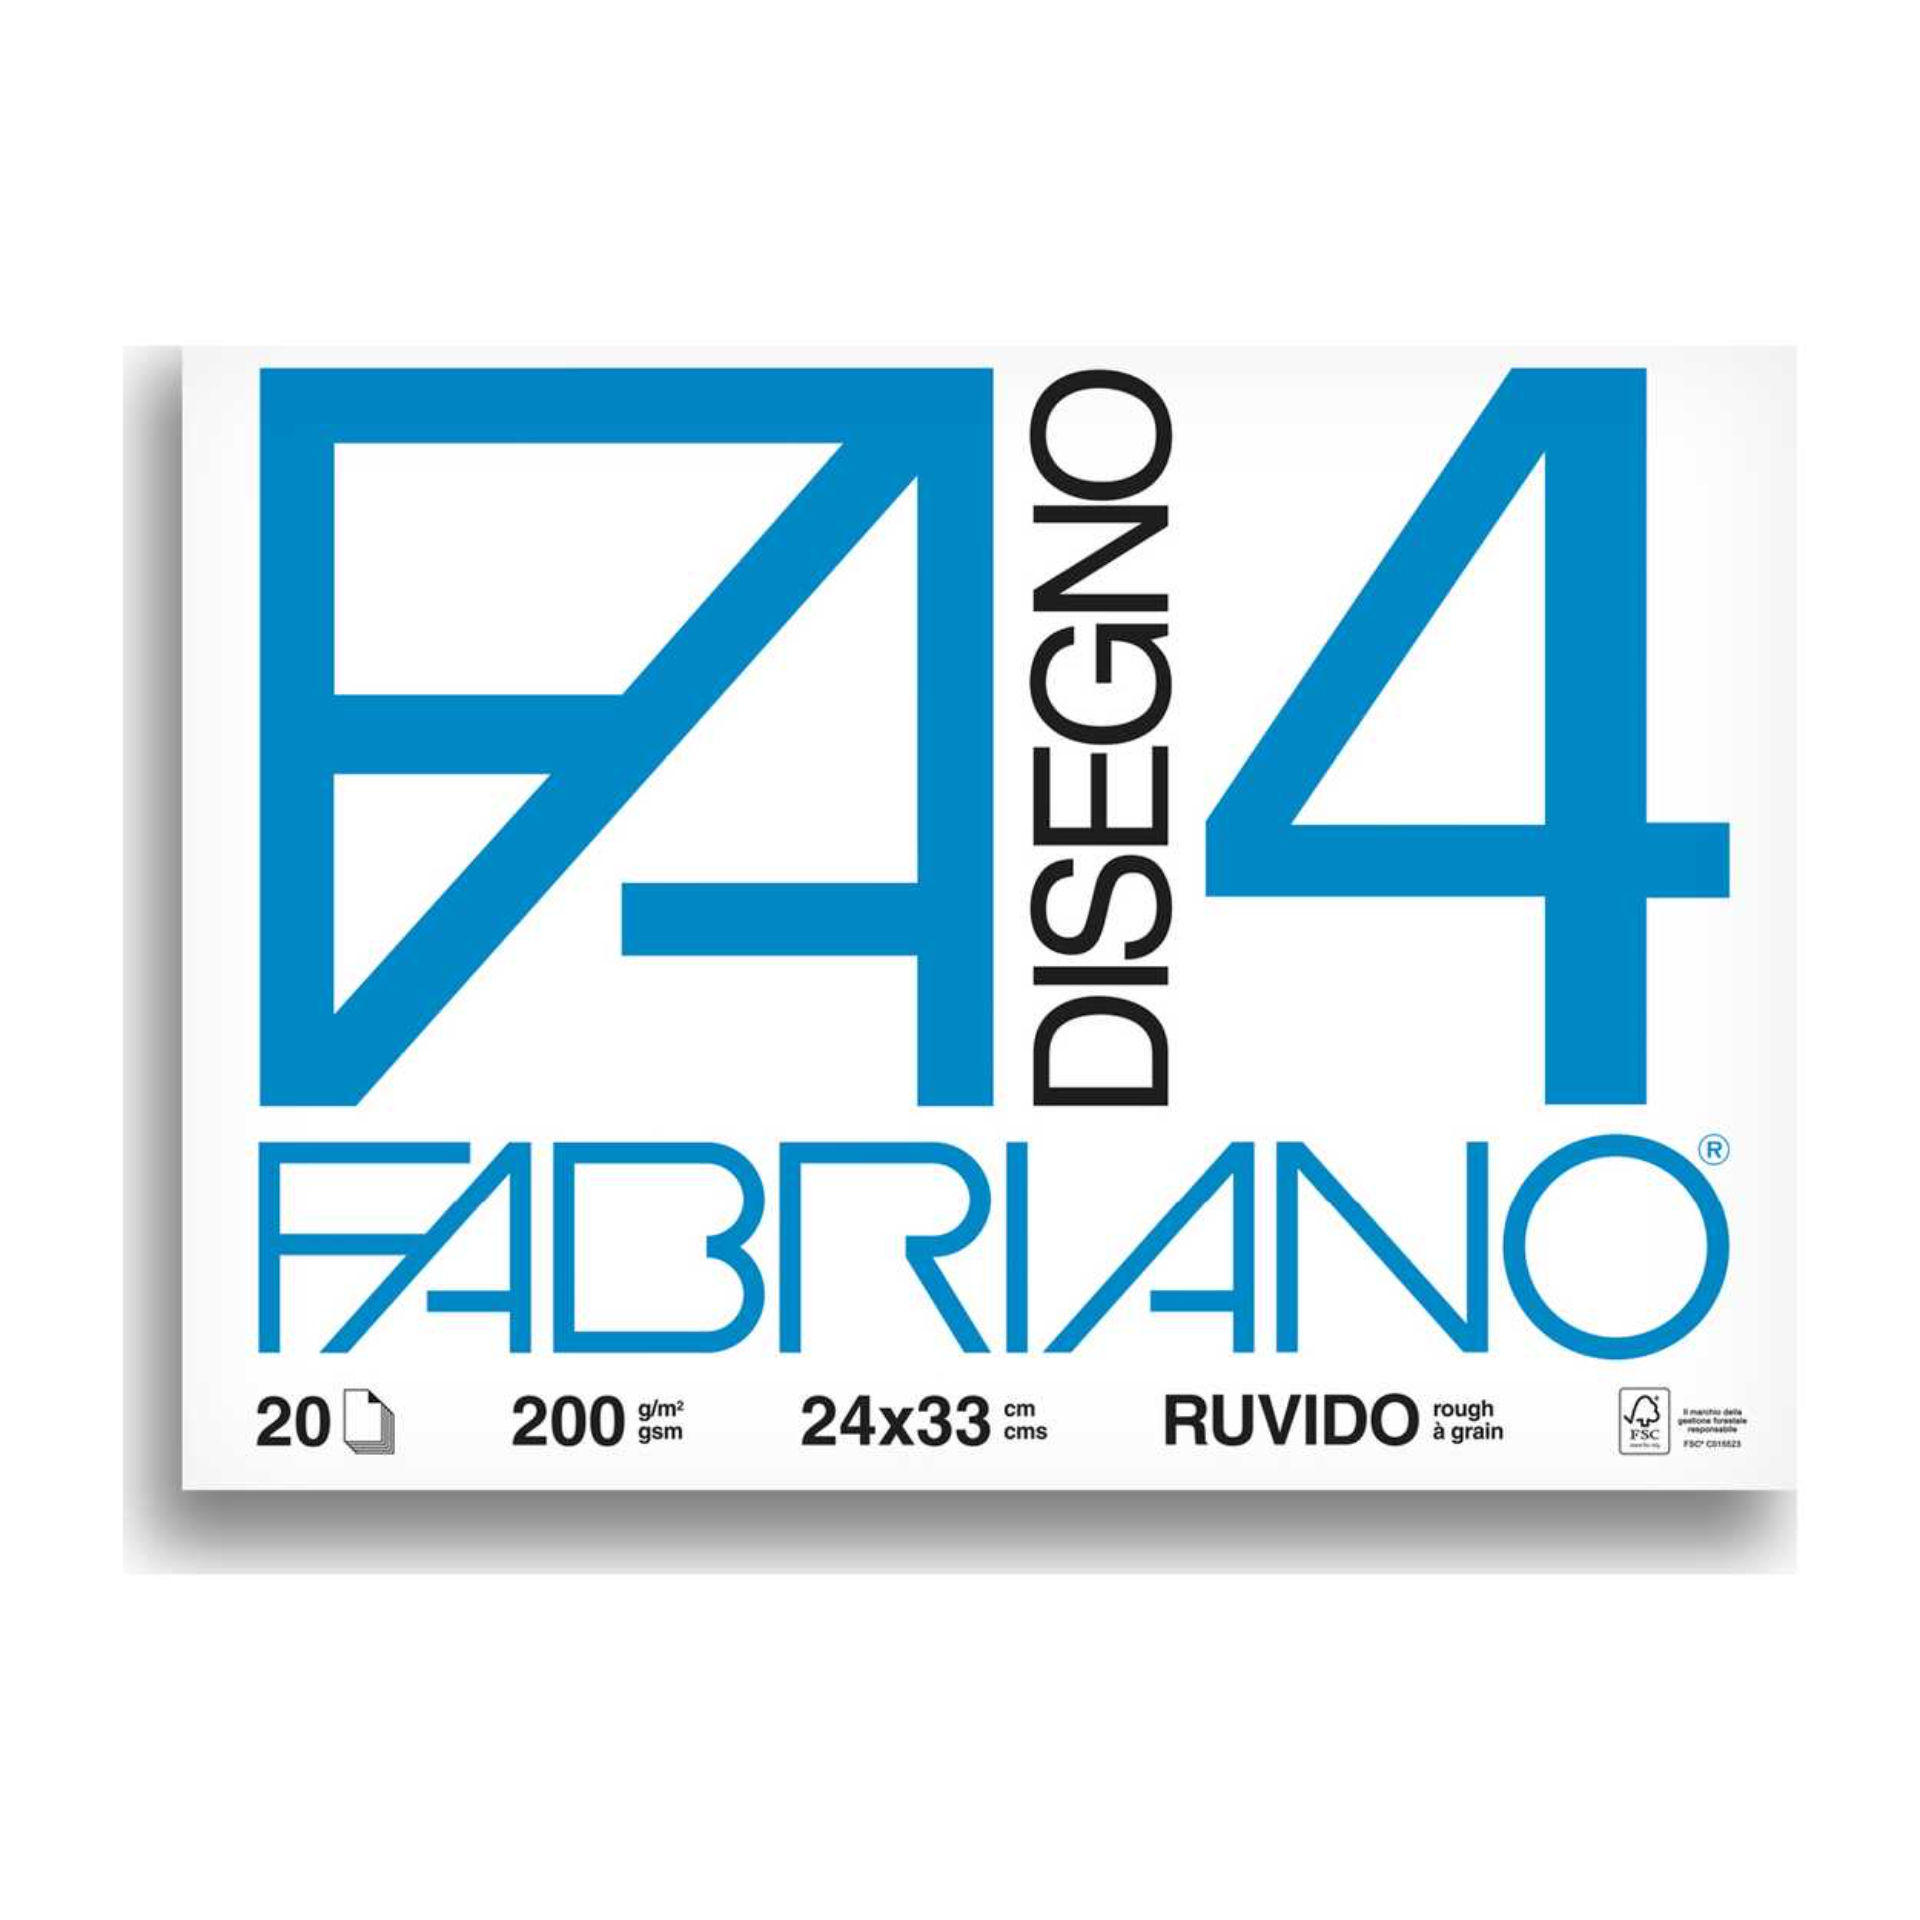 BLOCCO FABRIANO  597 - F4 24X33 FG.20 RUVIDOFabriano